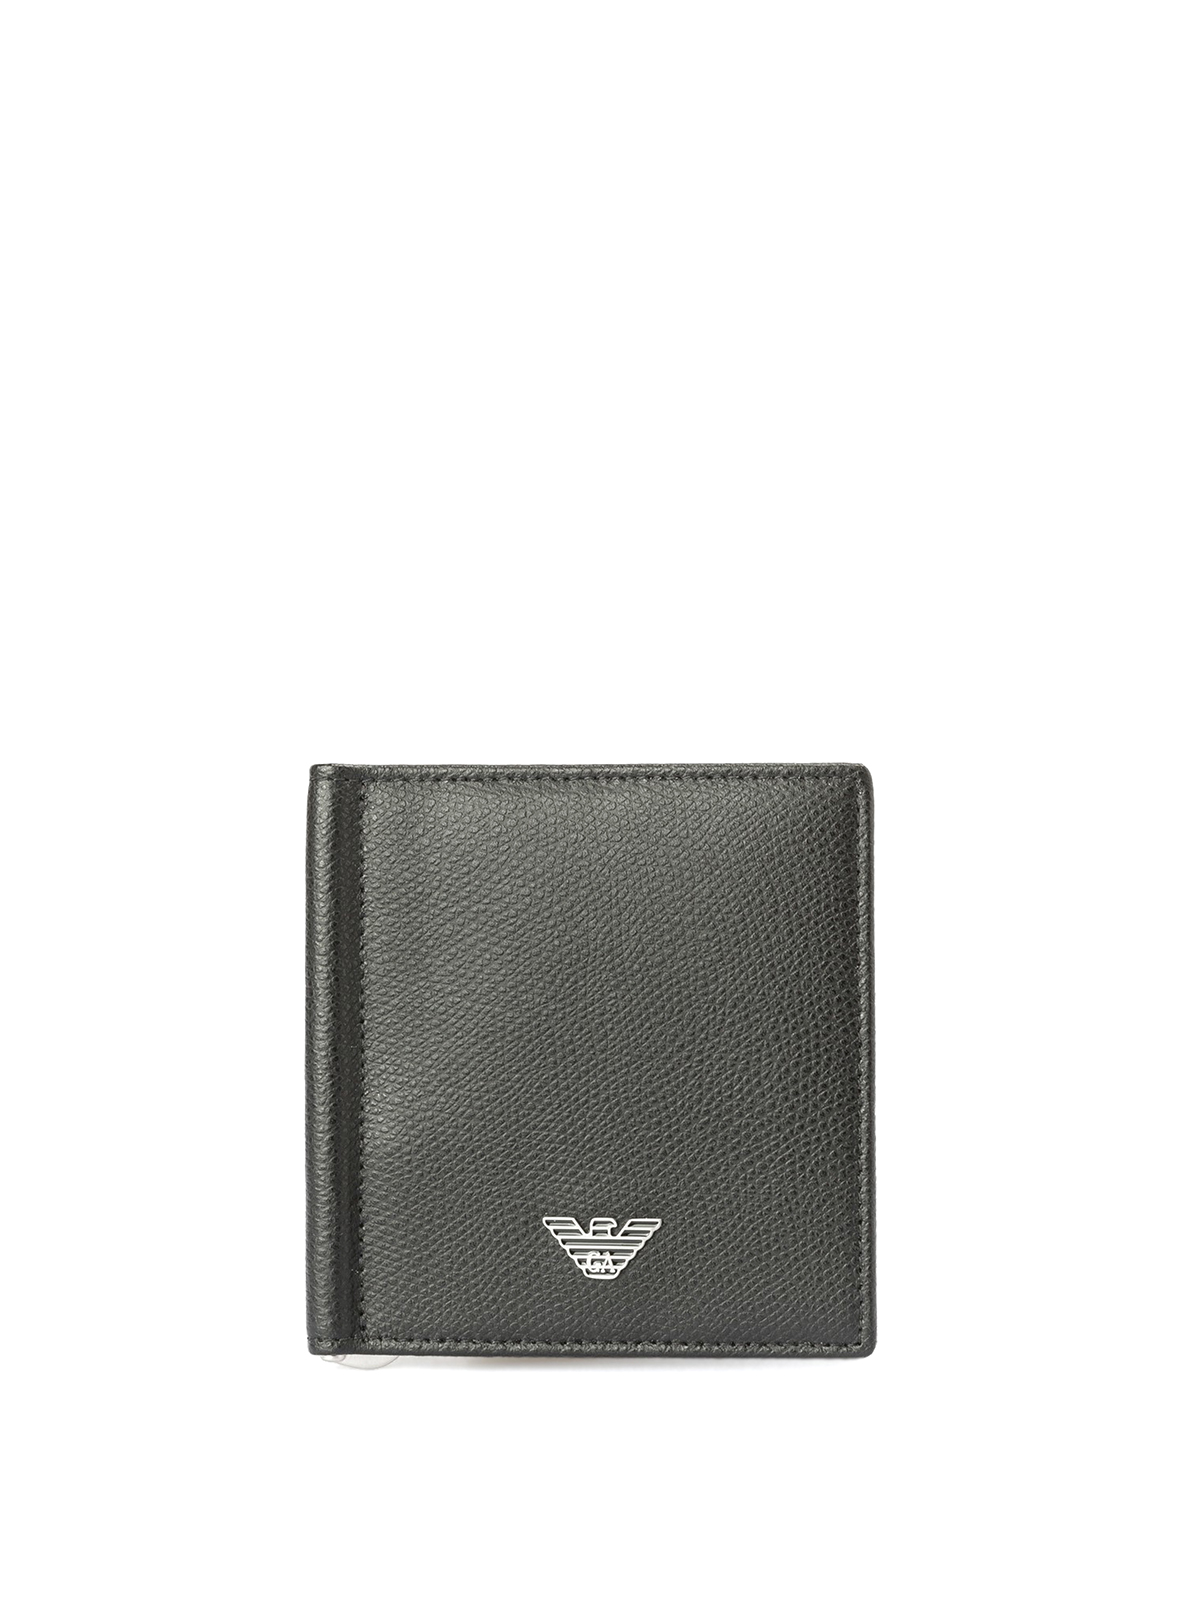 Wallets & purses Emporio Armani - Bifold money clip wallet -  YEML07YAQ2E181072